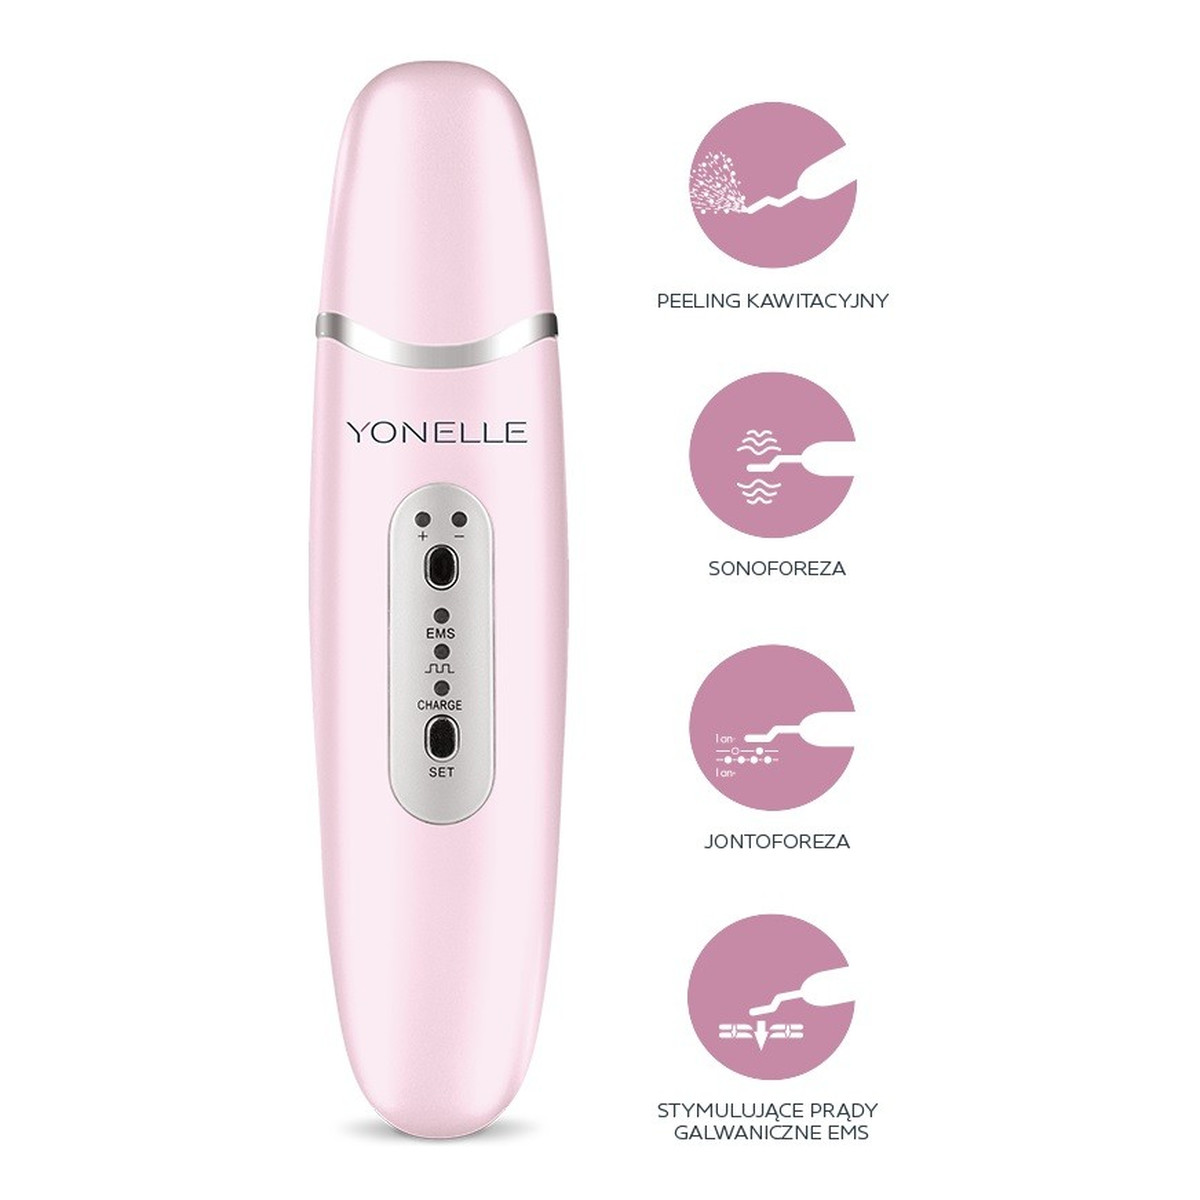 Yonelle Cavipeeler Wielofunkcyjne urządzenie kosmetyczne